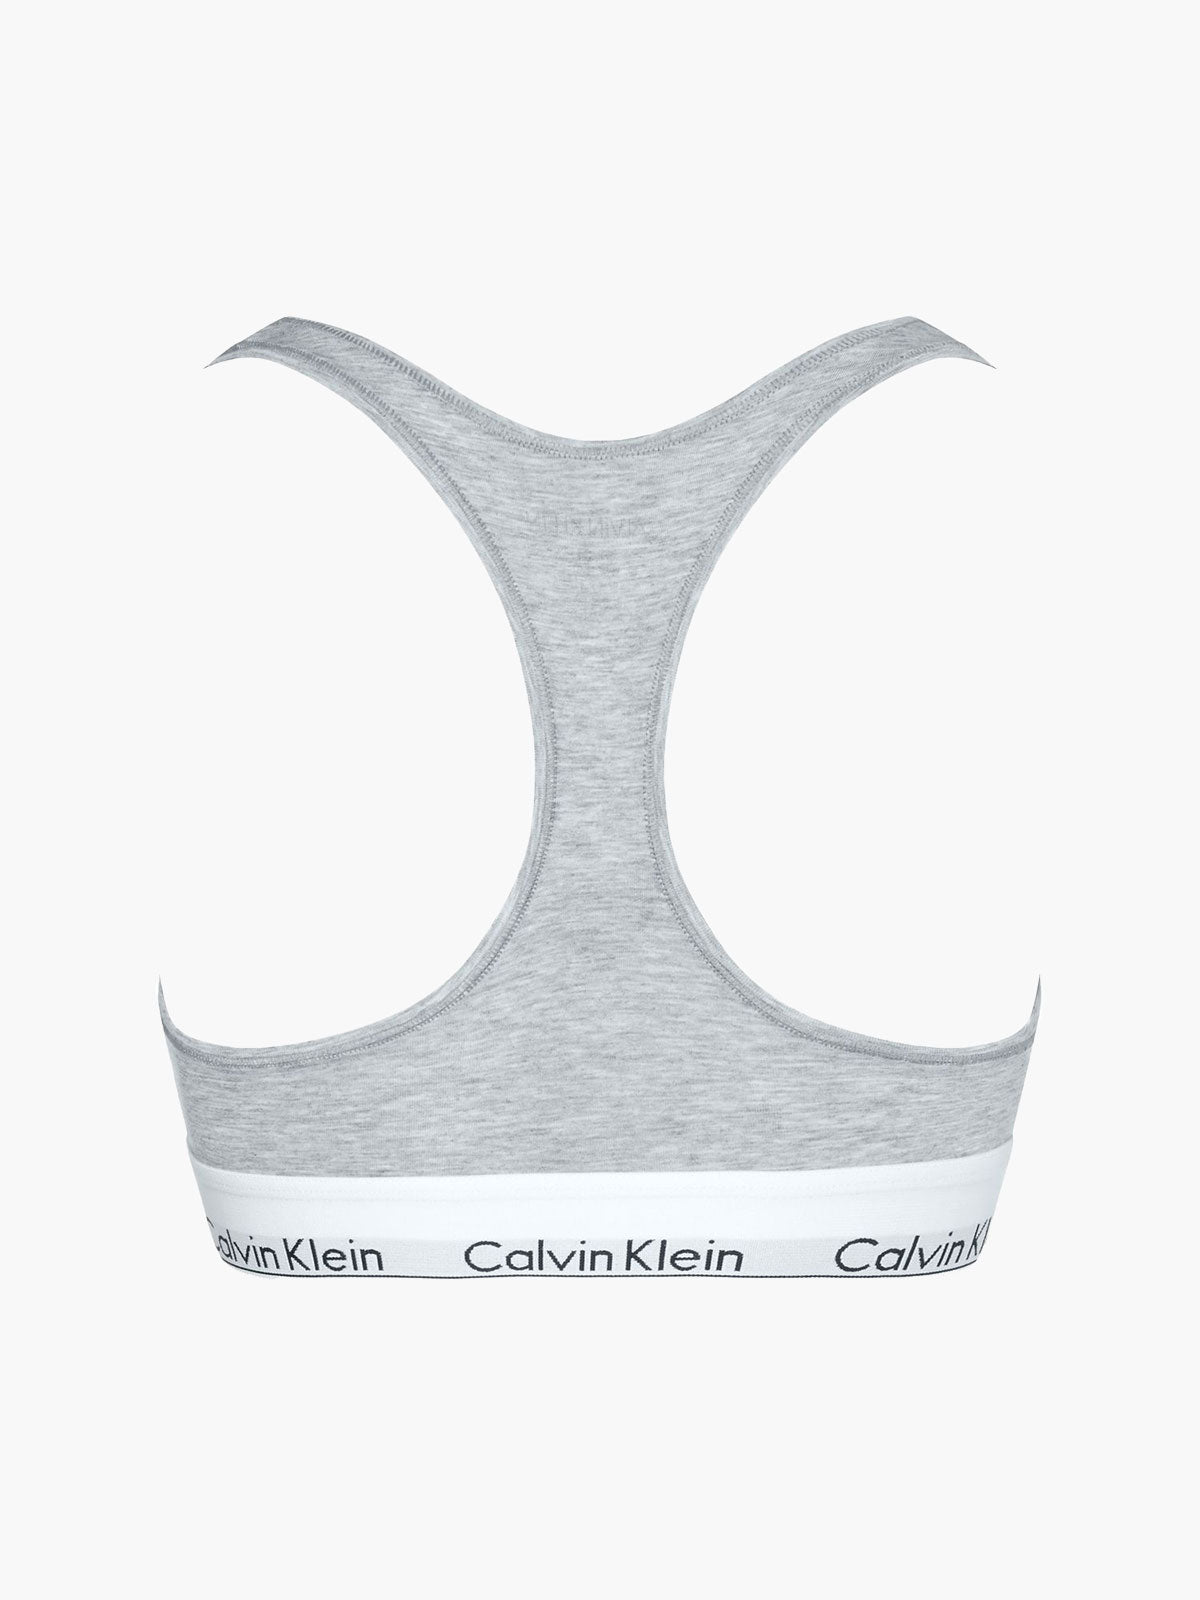 גוזייה ספורטיבית לוגו רקום // נשים- Ck|קלווין קליין